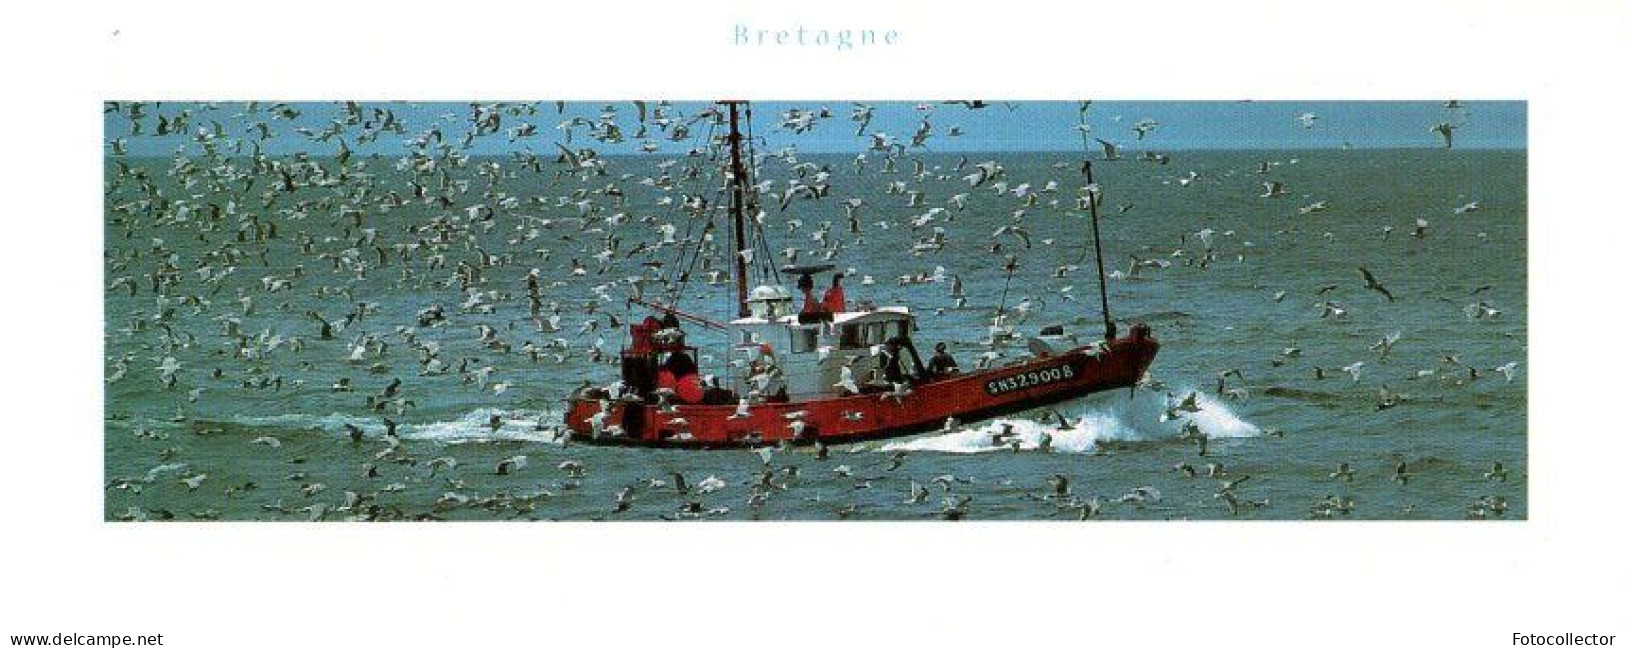 Retour De Pêche Du Chalutier Immatriculé SN329008 (Saint Nazaire 44) - Fischerei